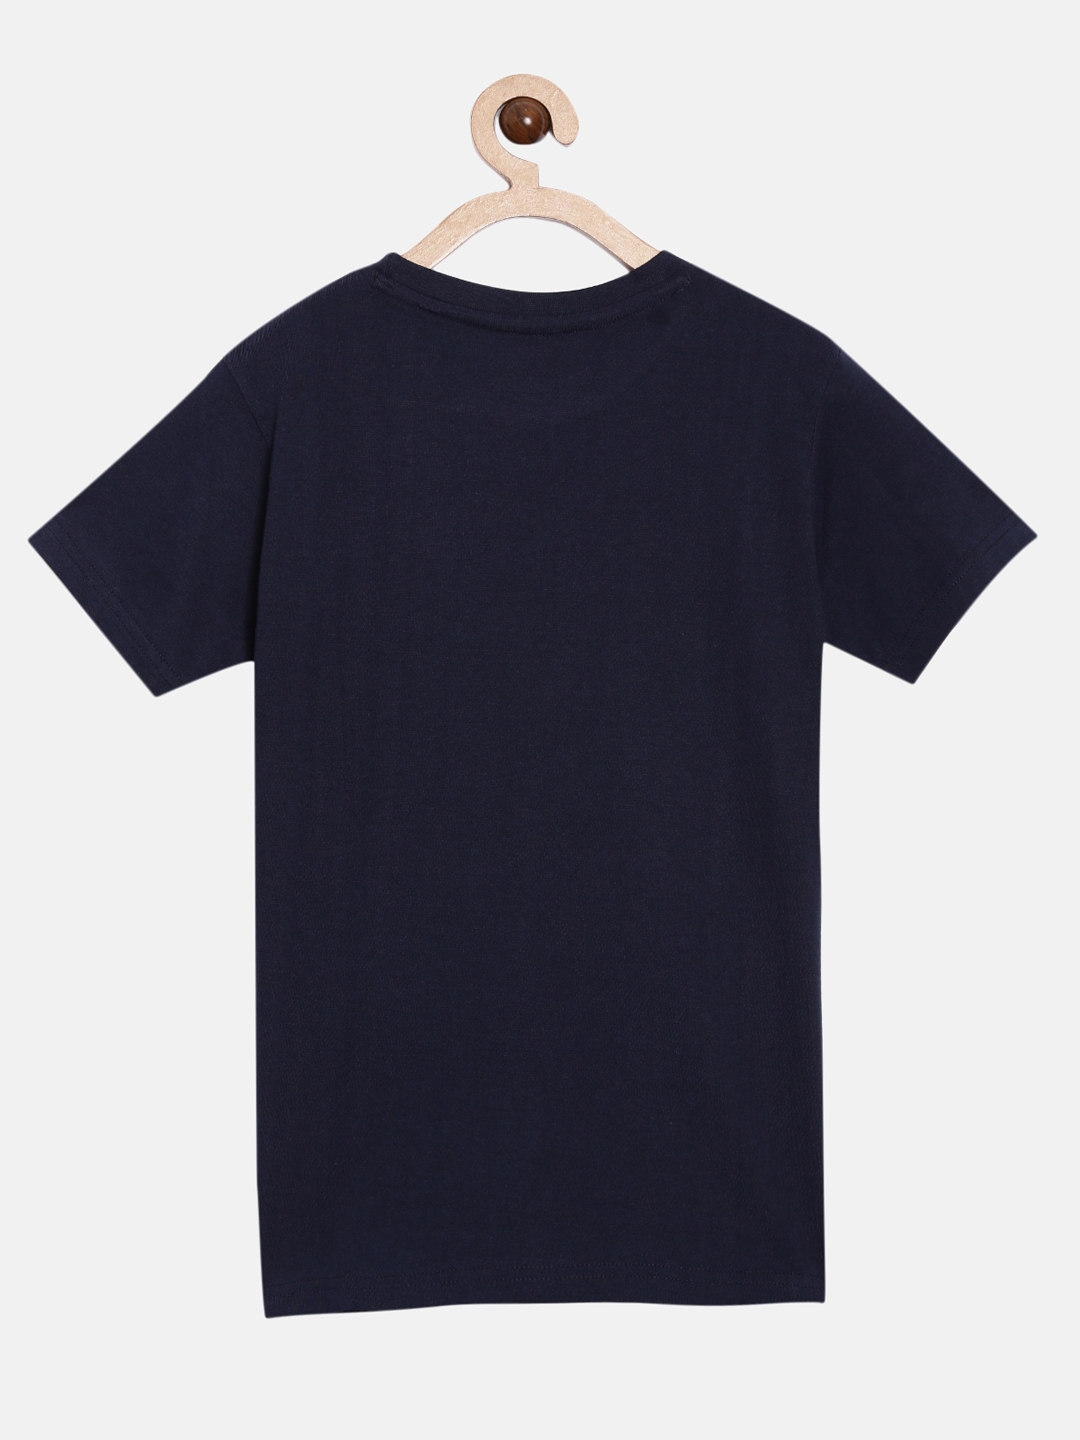 Peejas | Peejas Kids Boys 100% Cotton Chest Printed Short Sleeve Tshirt 1